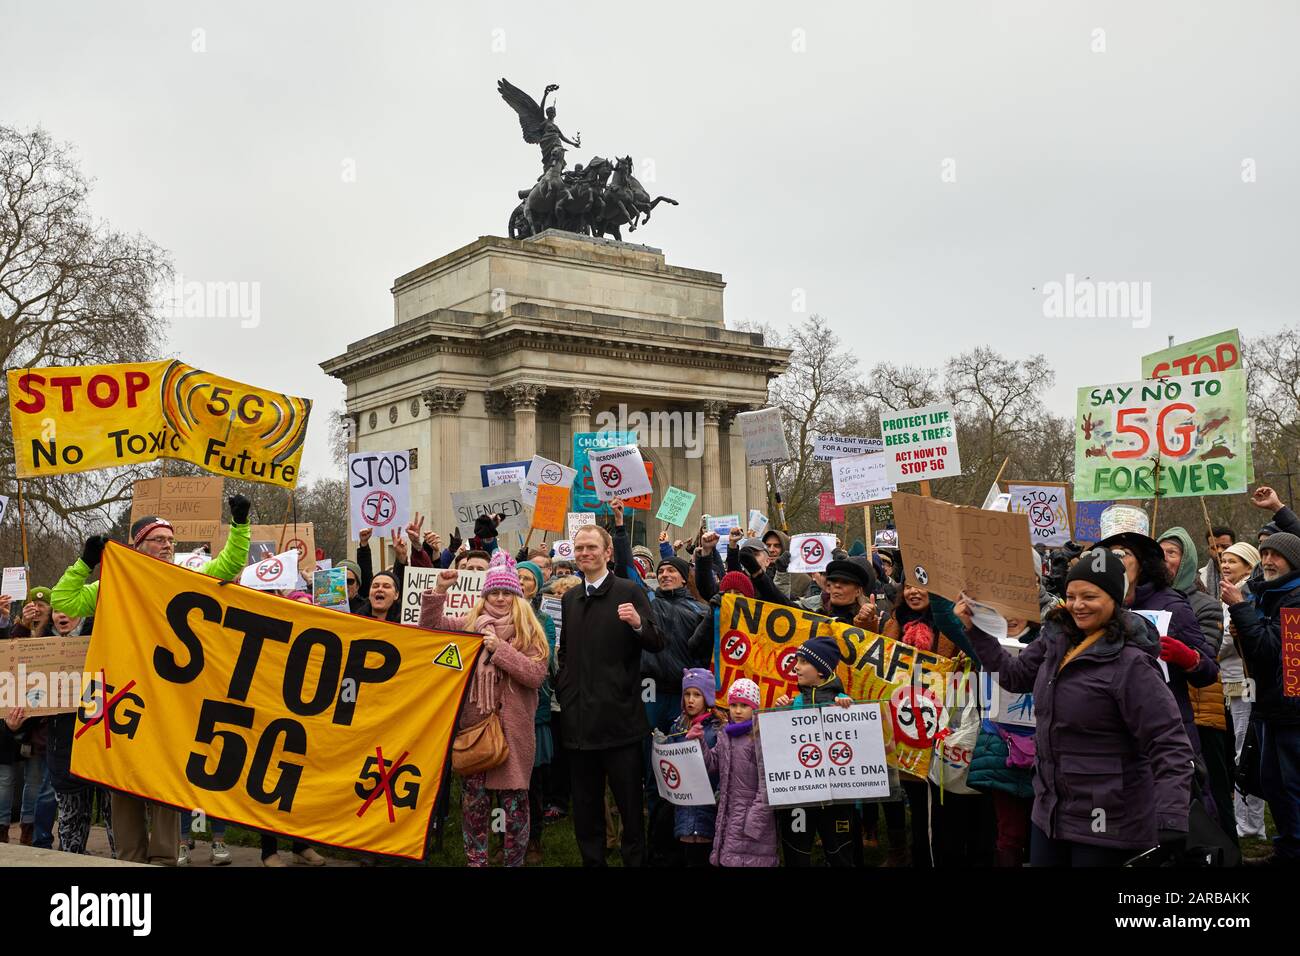 Londres, Reino Unido - 25 de enero de 2020: Los manifestantes se reúnen en Hyde Park Corner pidiendo que se detenga la introducción de la tecnología 5G. Foto de stock